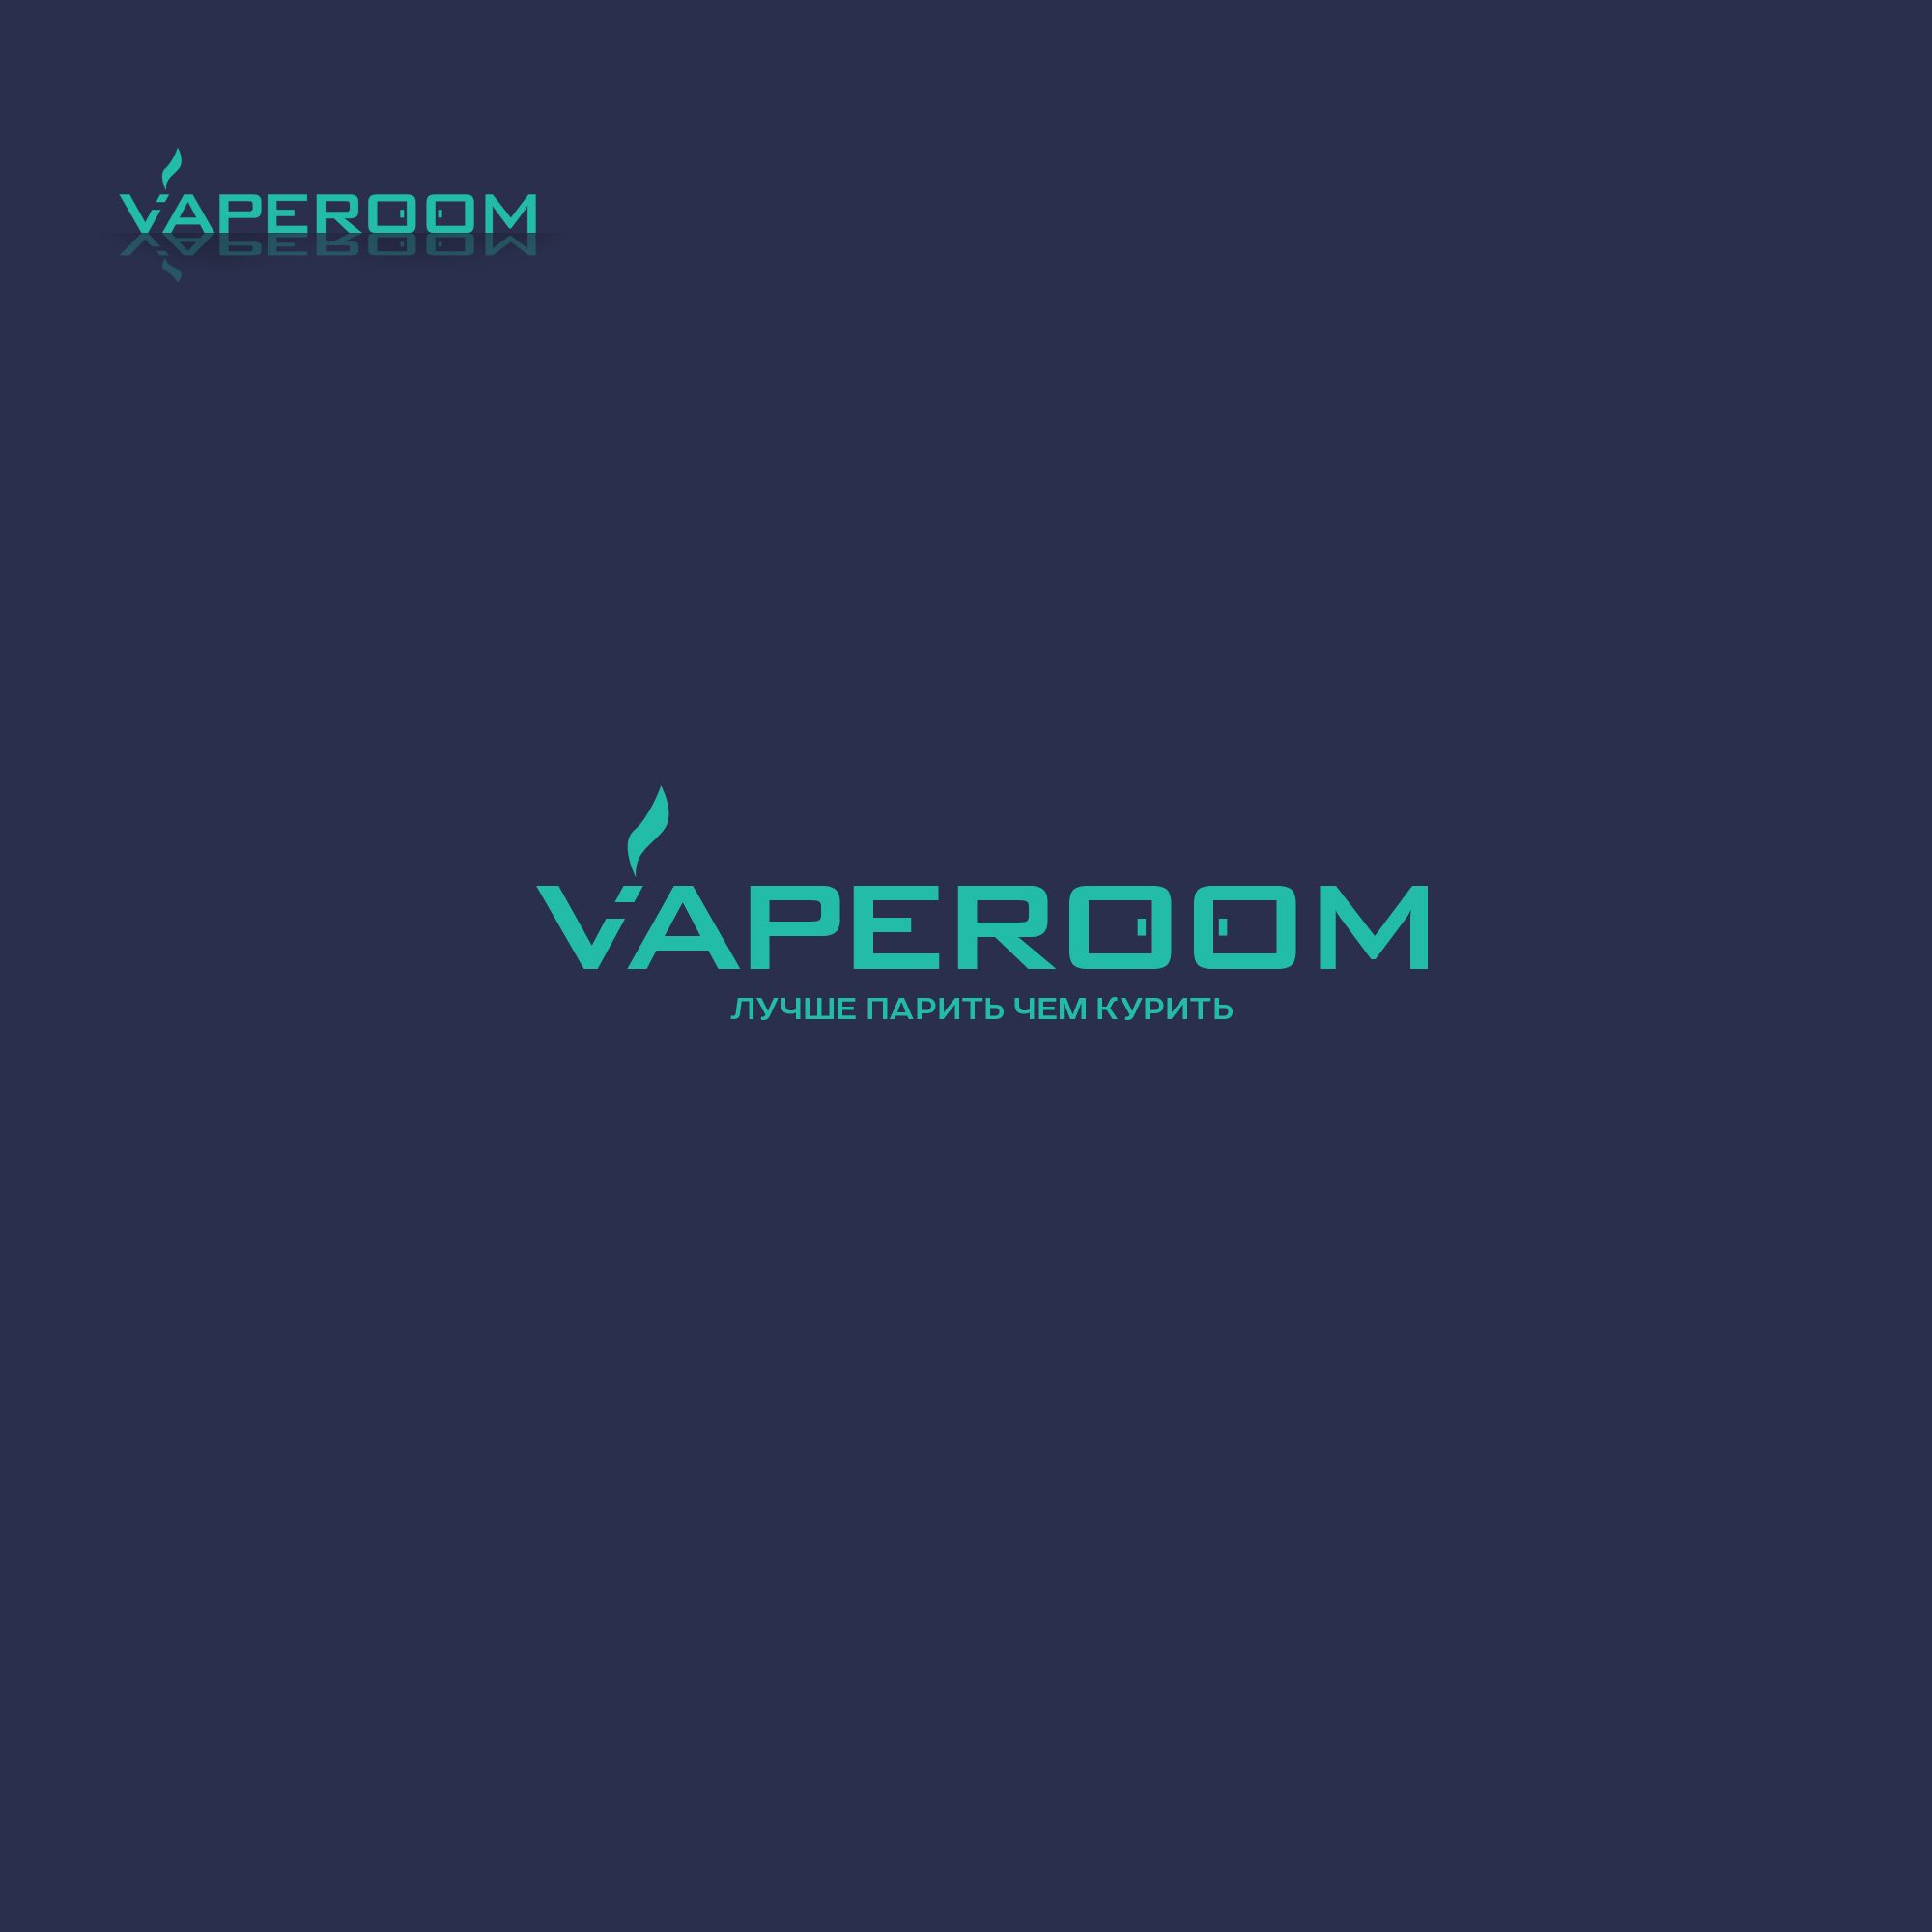 Логотип для сети магазинов VapeRoom  - дизайнер weste32